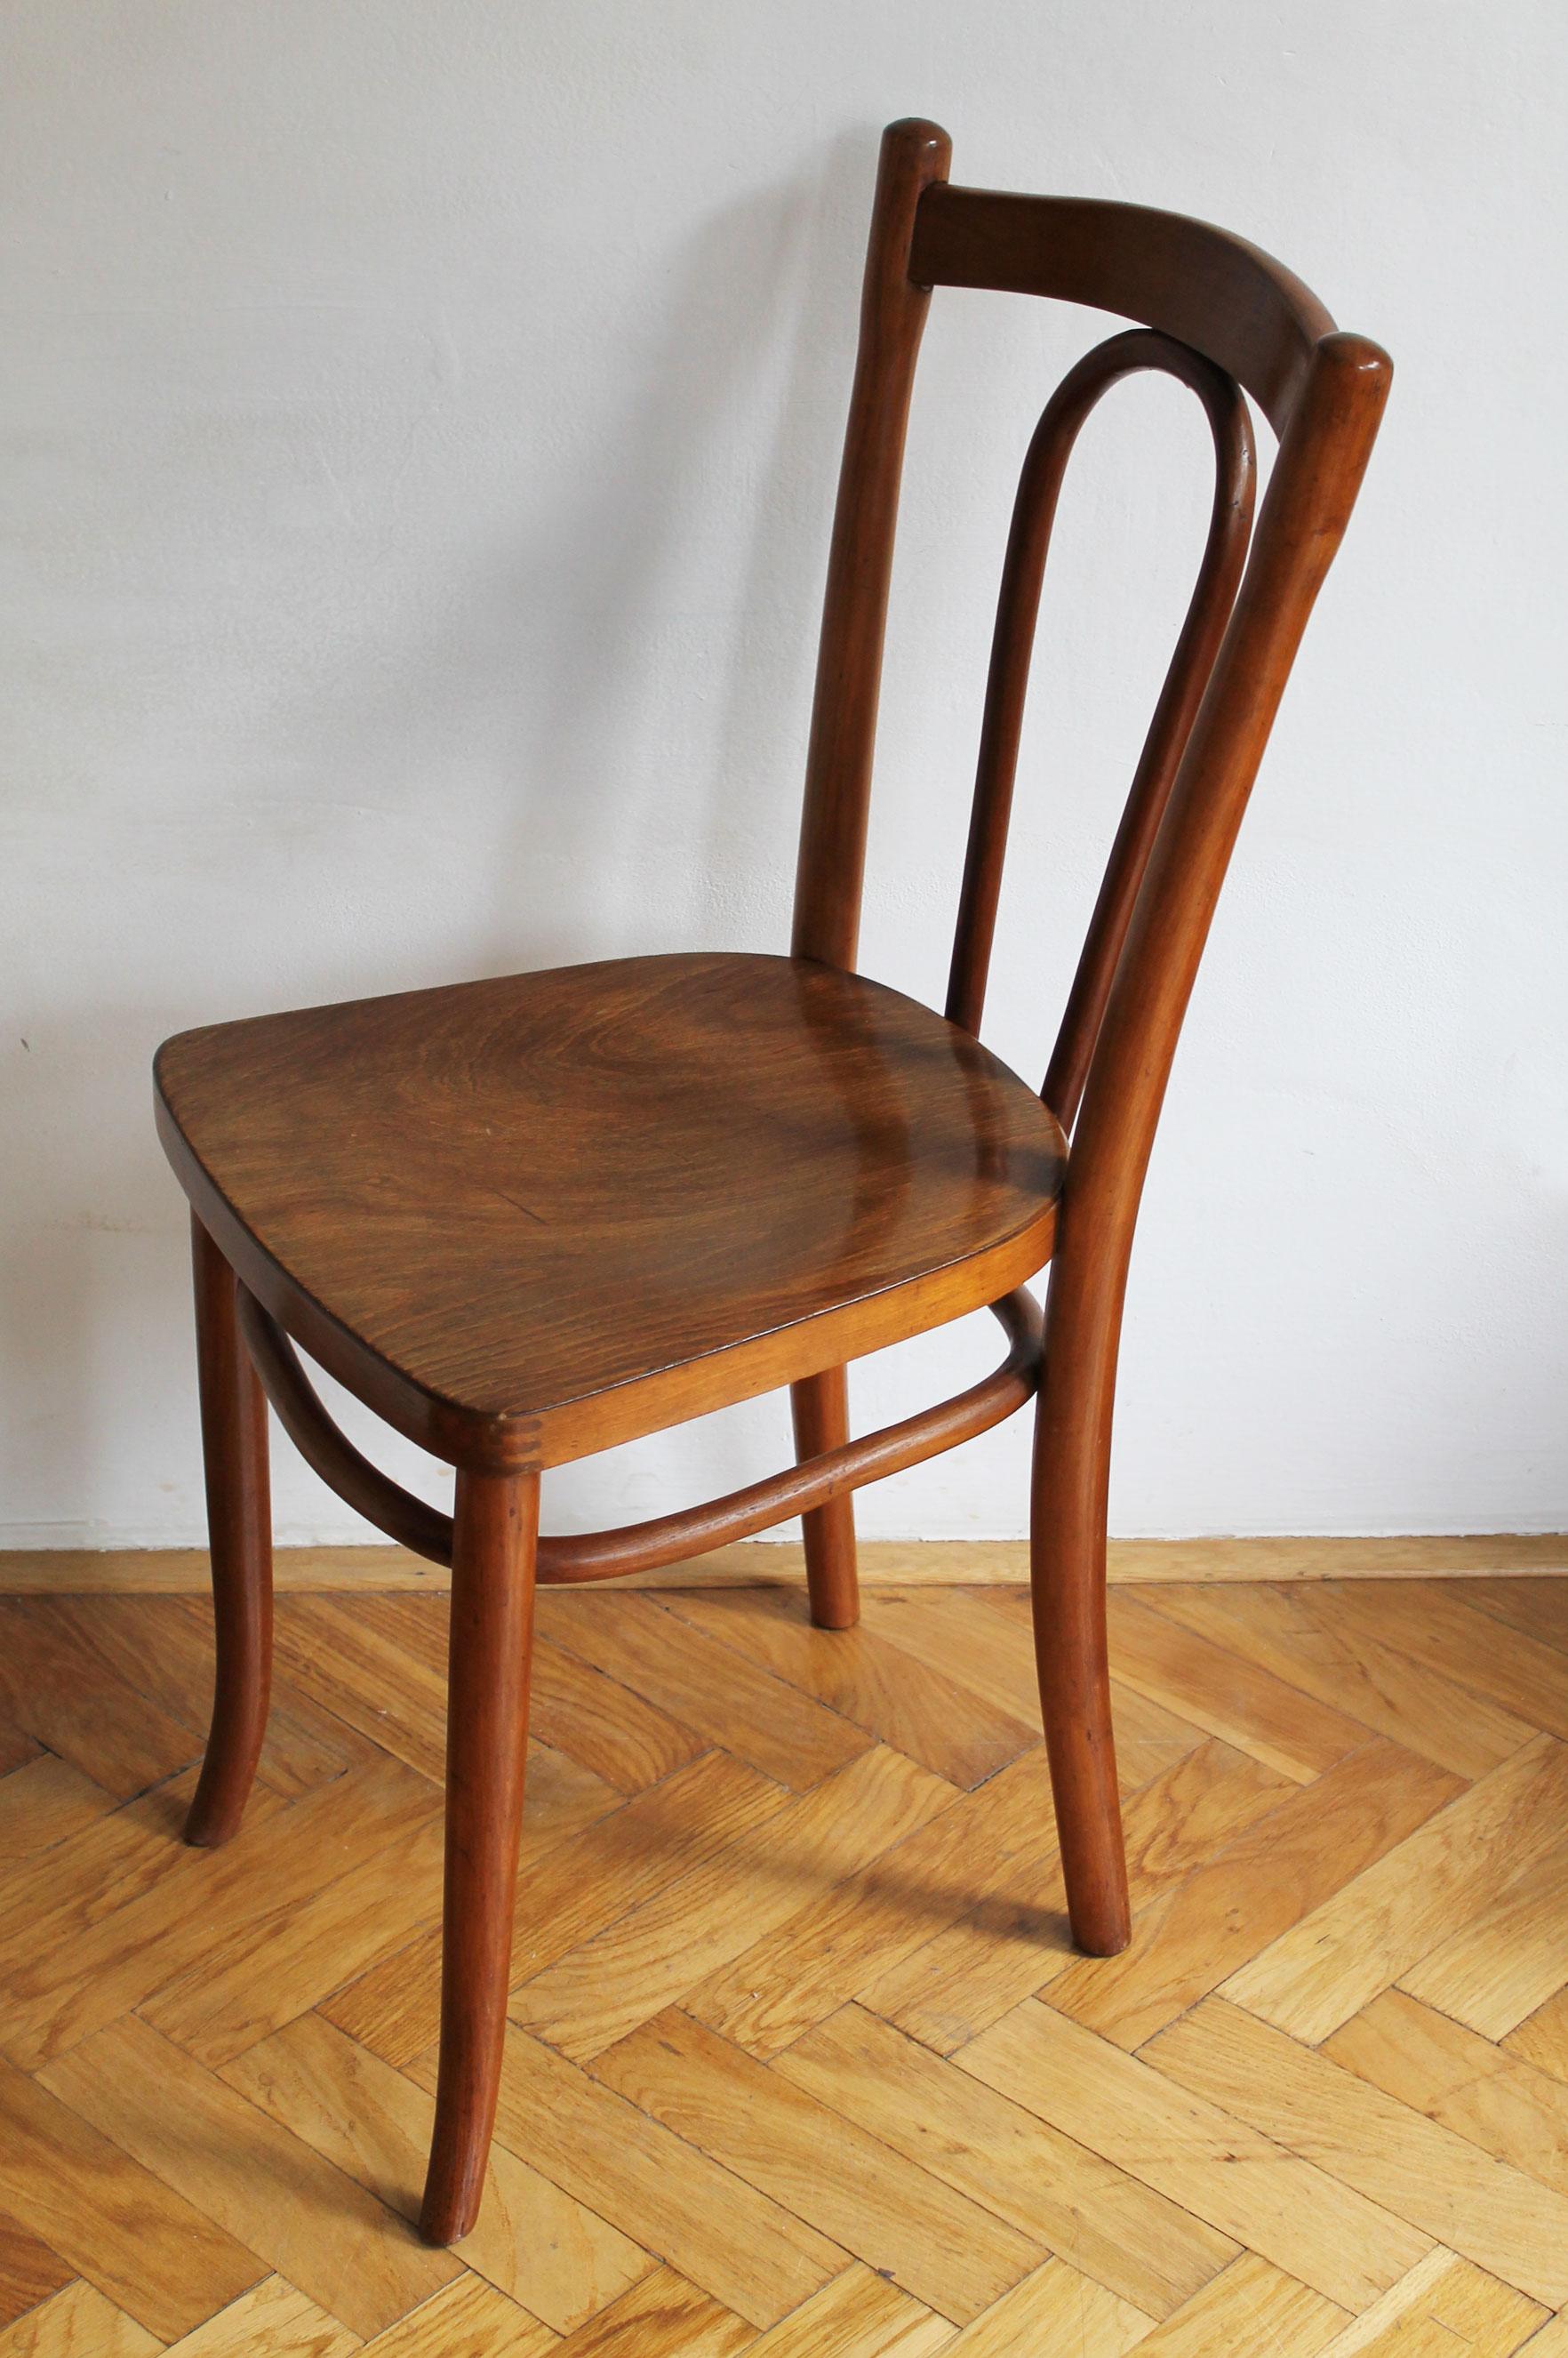 Il s'agit de l'une des chaises les plus réussies sur le plan commercial, conçue et produite par la célèbre société Gebrüder Thonet. Il a été conçu pour la première fois en 1885 (très probablement par August Thonet) et peut être trouvé dans les